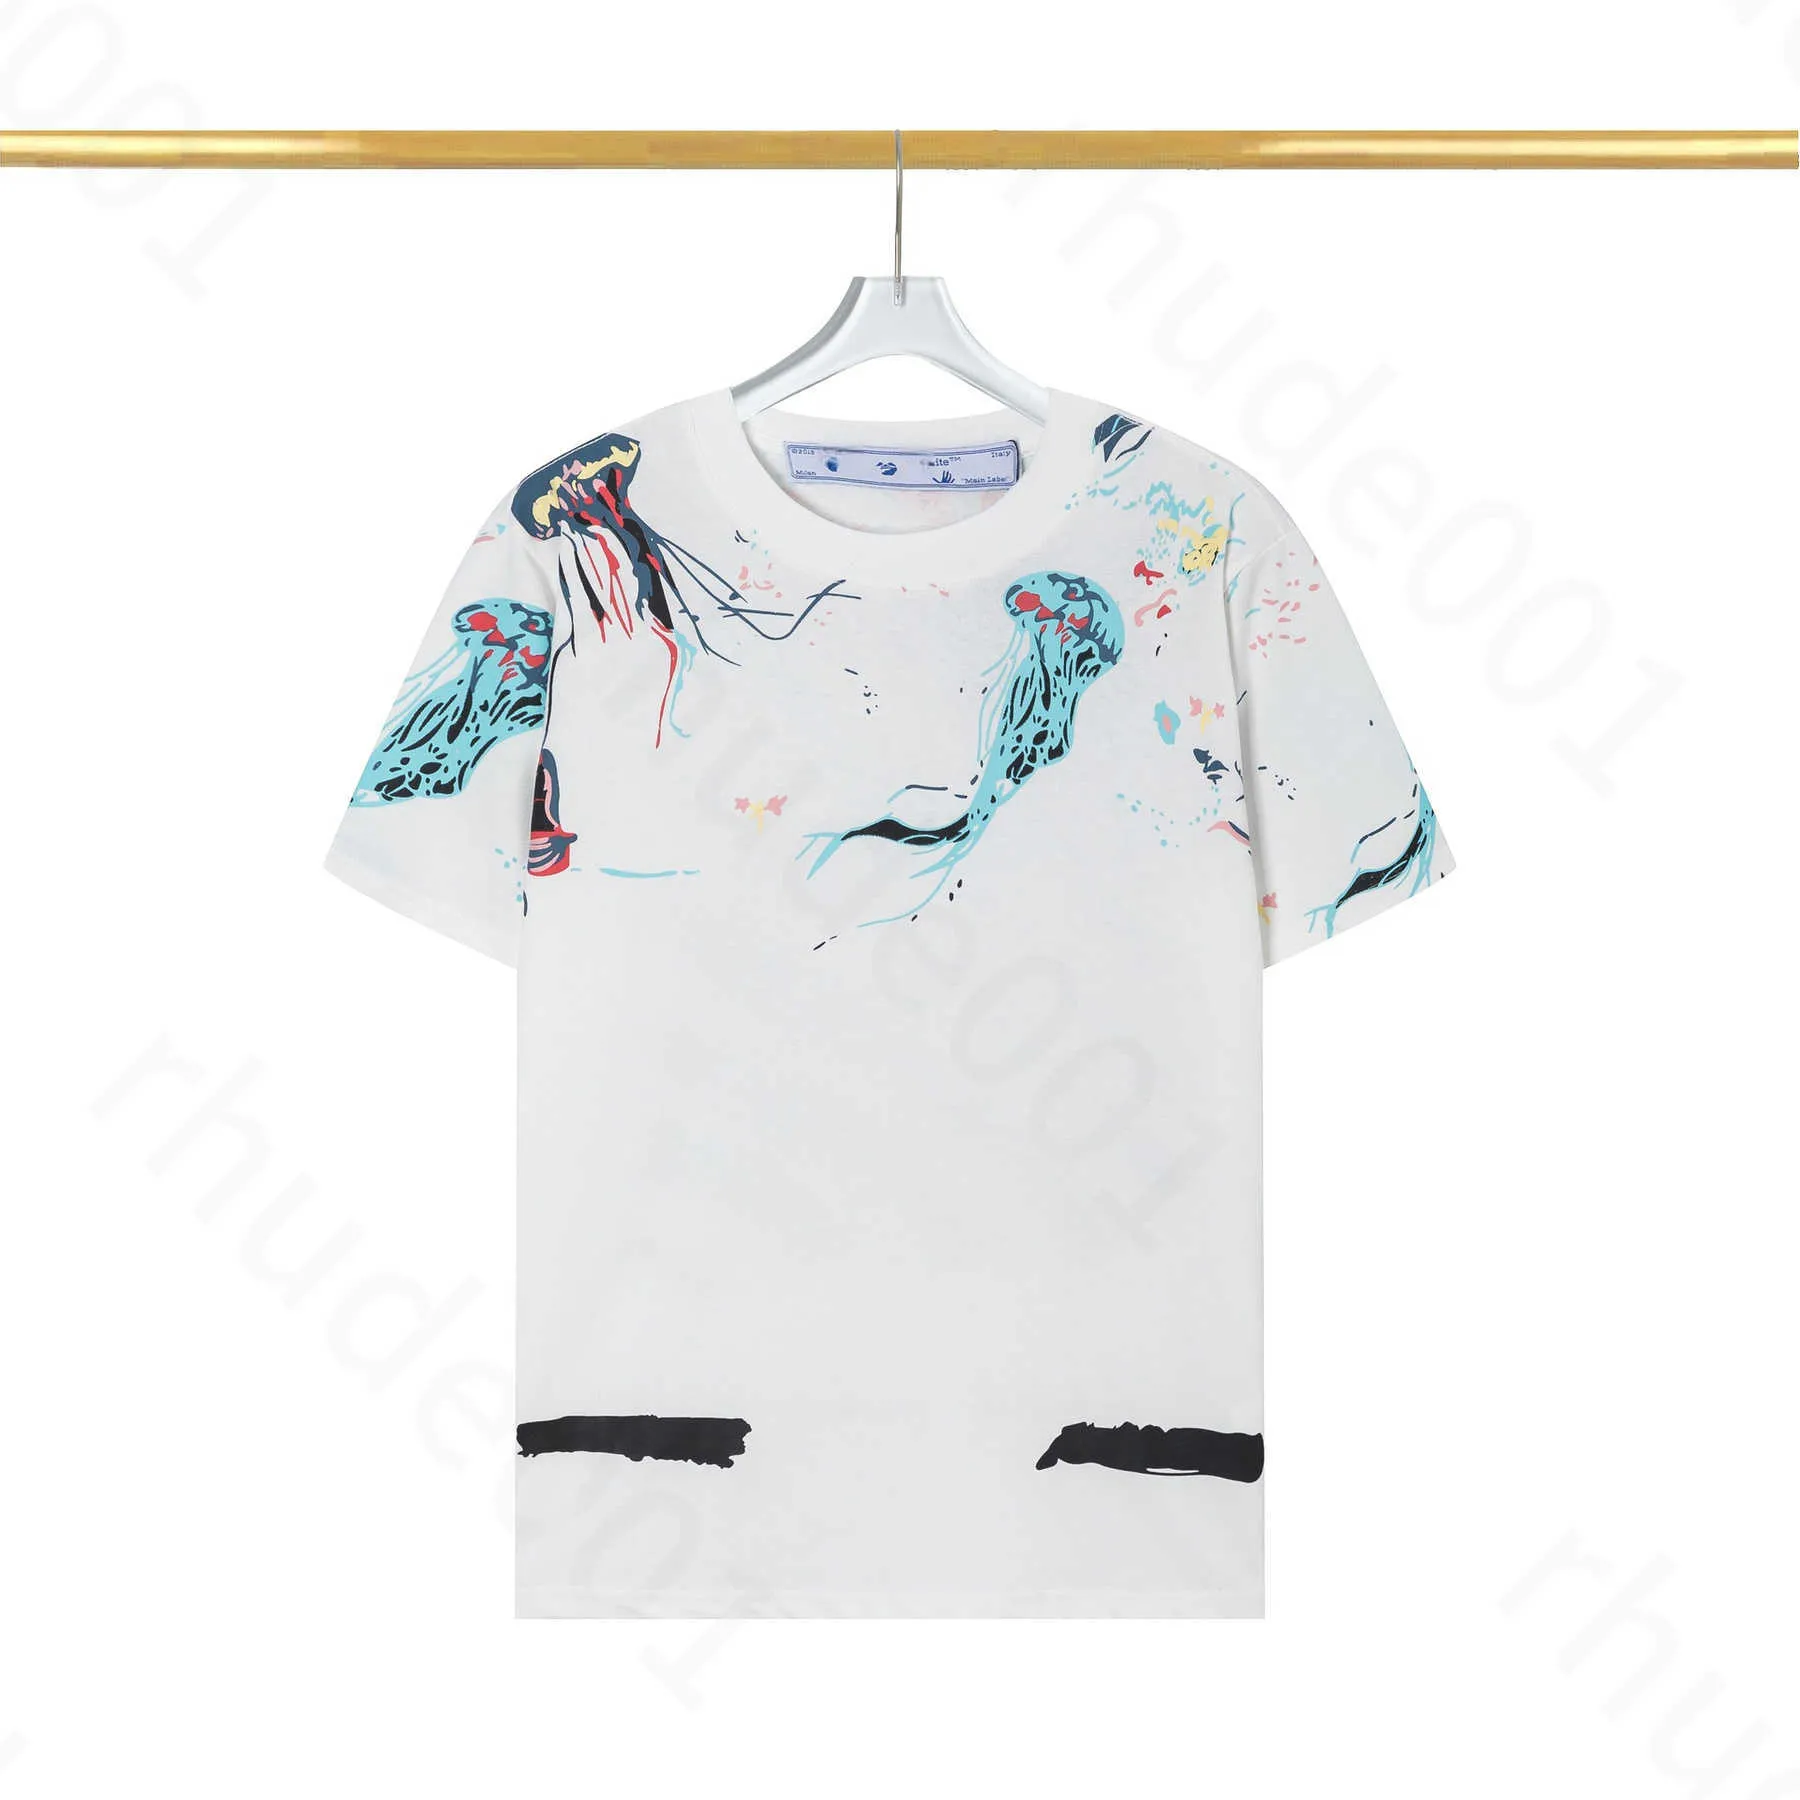 Off Мужские футболки Offs Белая рубашка с нерегулярной стрелкой Дизайнерская модная летняя свободная повседневная футболка с коротким рукавом для мужчин и женщин с принтом буквы x на спине X1b8